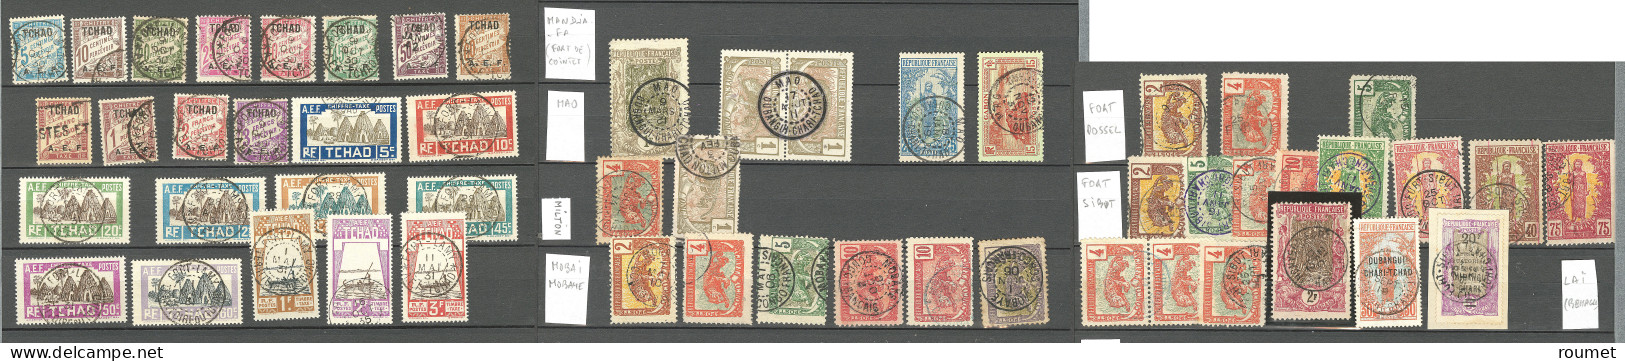 Collection. 1915-1930 (Poste, Taxe), obl choisies et petits bureaux sur TP du Congo et du Gabon, entre Abeche et Zouar. 